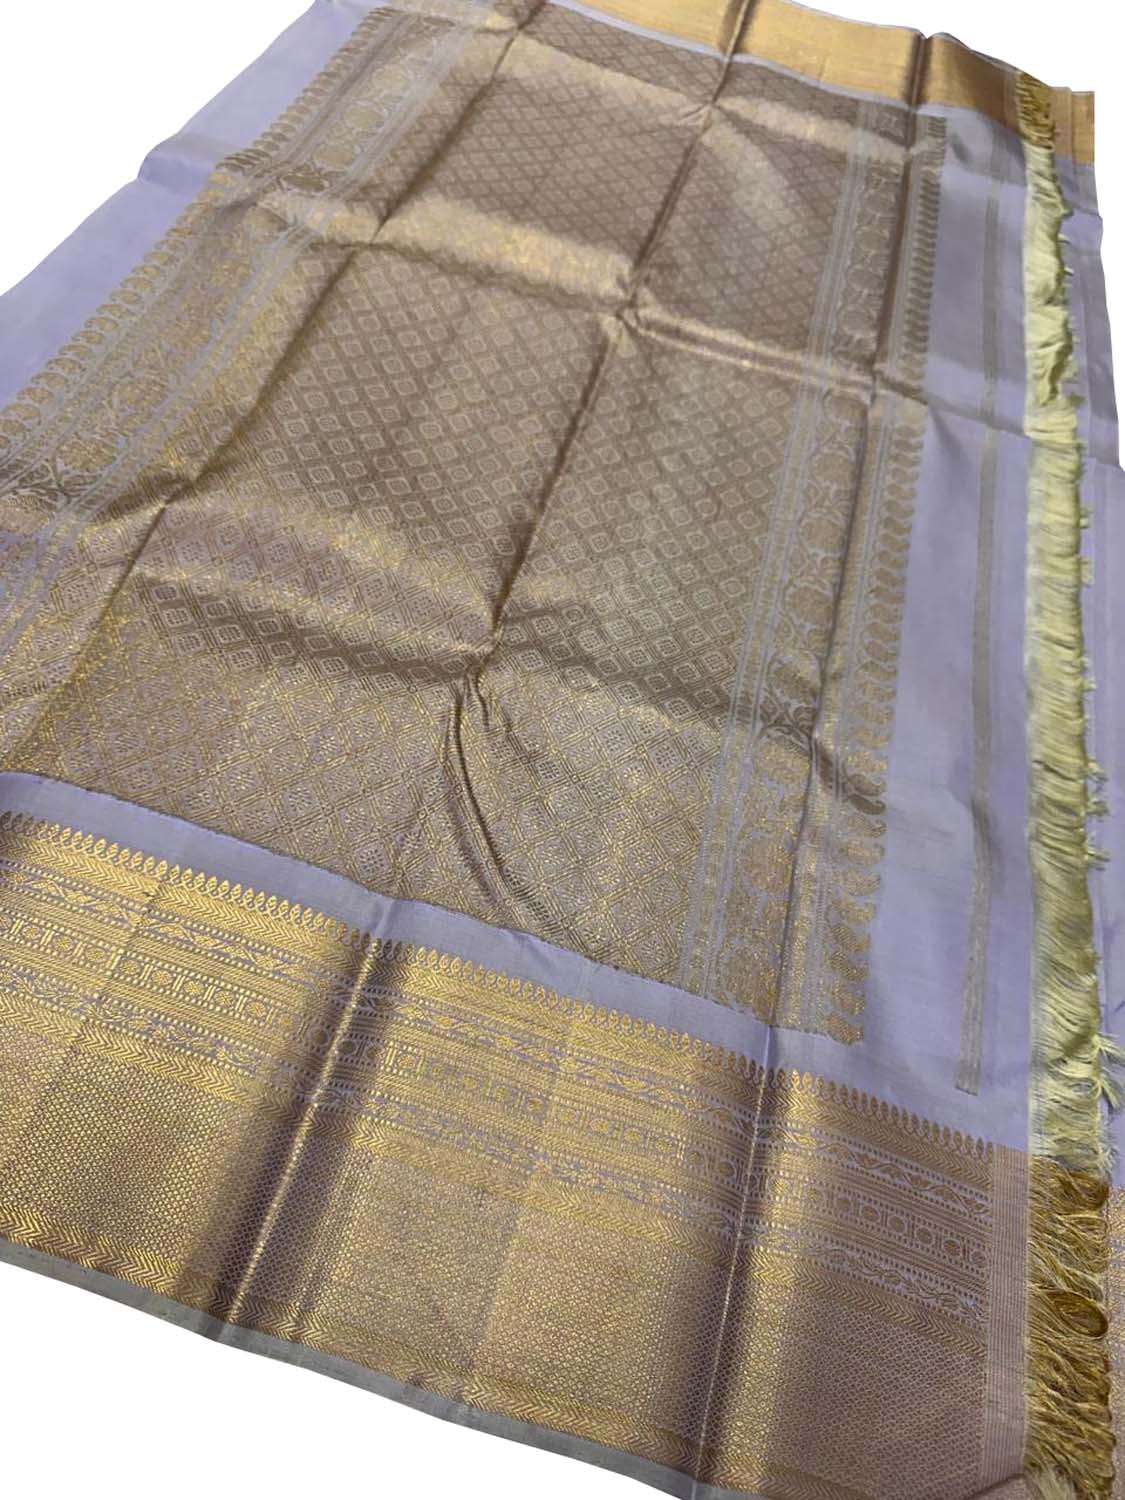 Exquisite Grey Kanjeevaram Handloom Silk Saree - Luxurion World